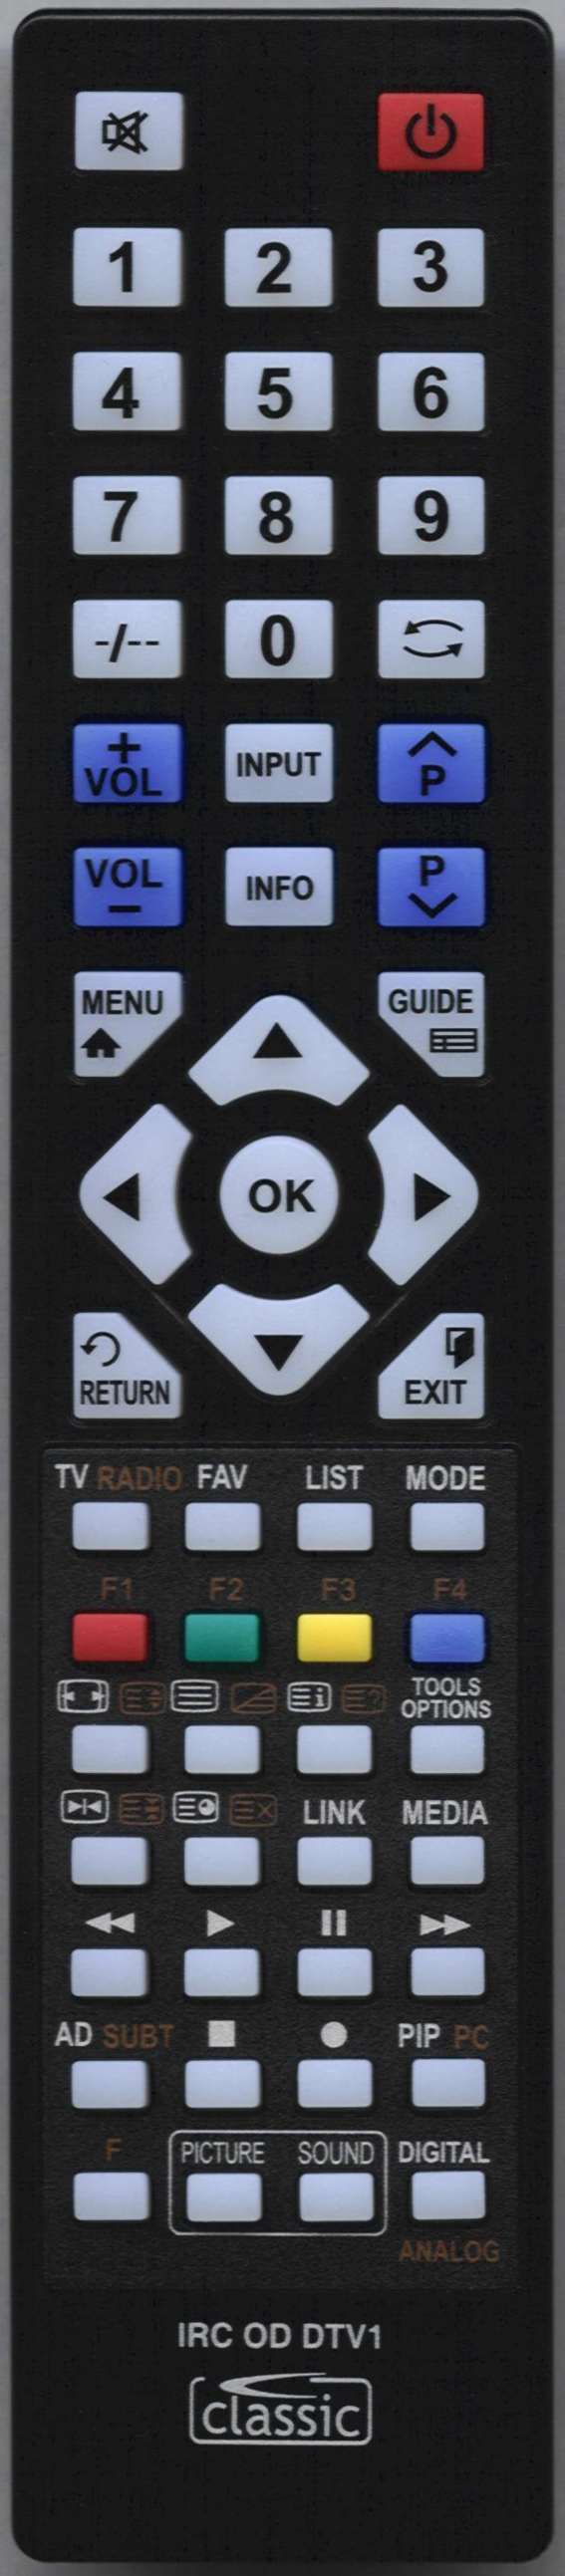 SONY KDL40W705C Remote Control Alternative